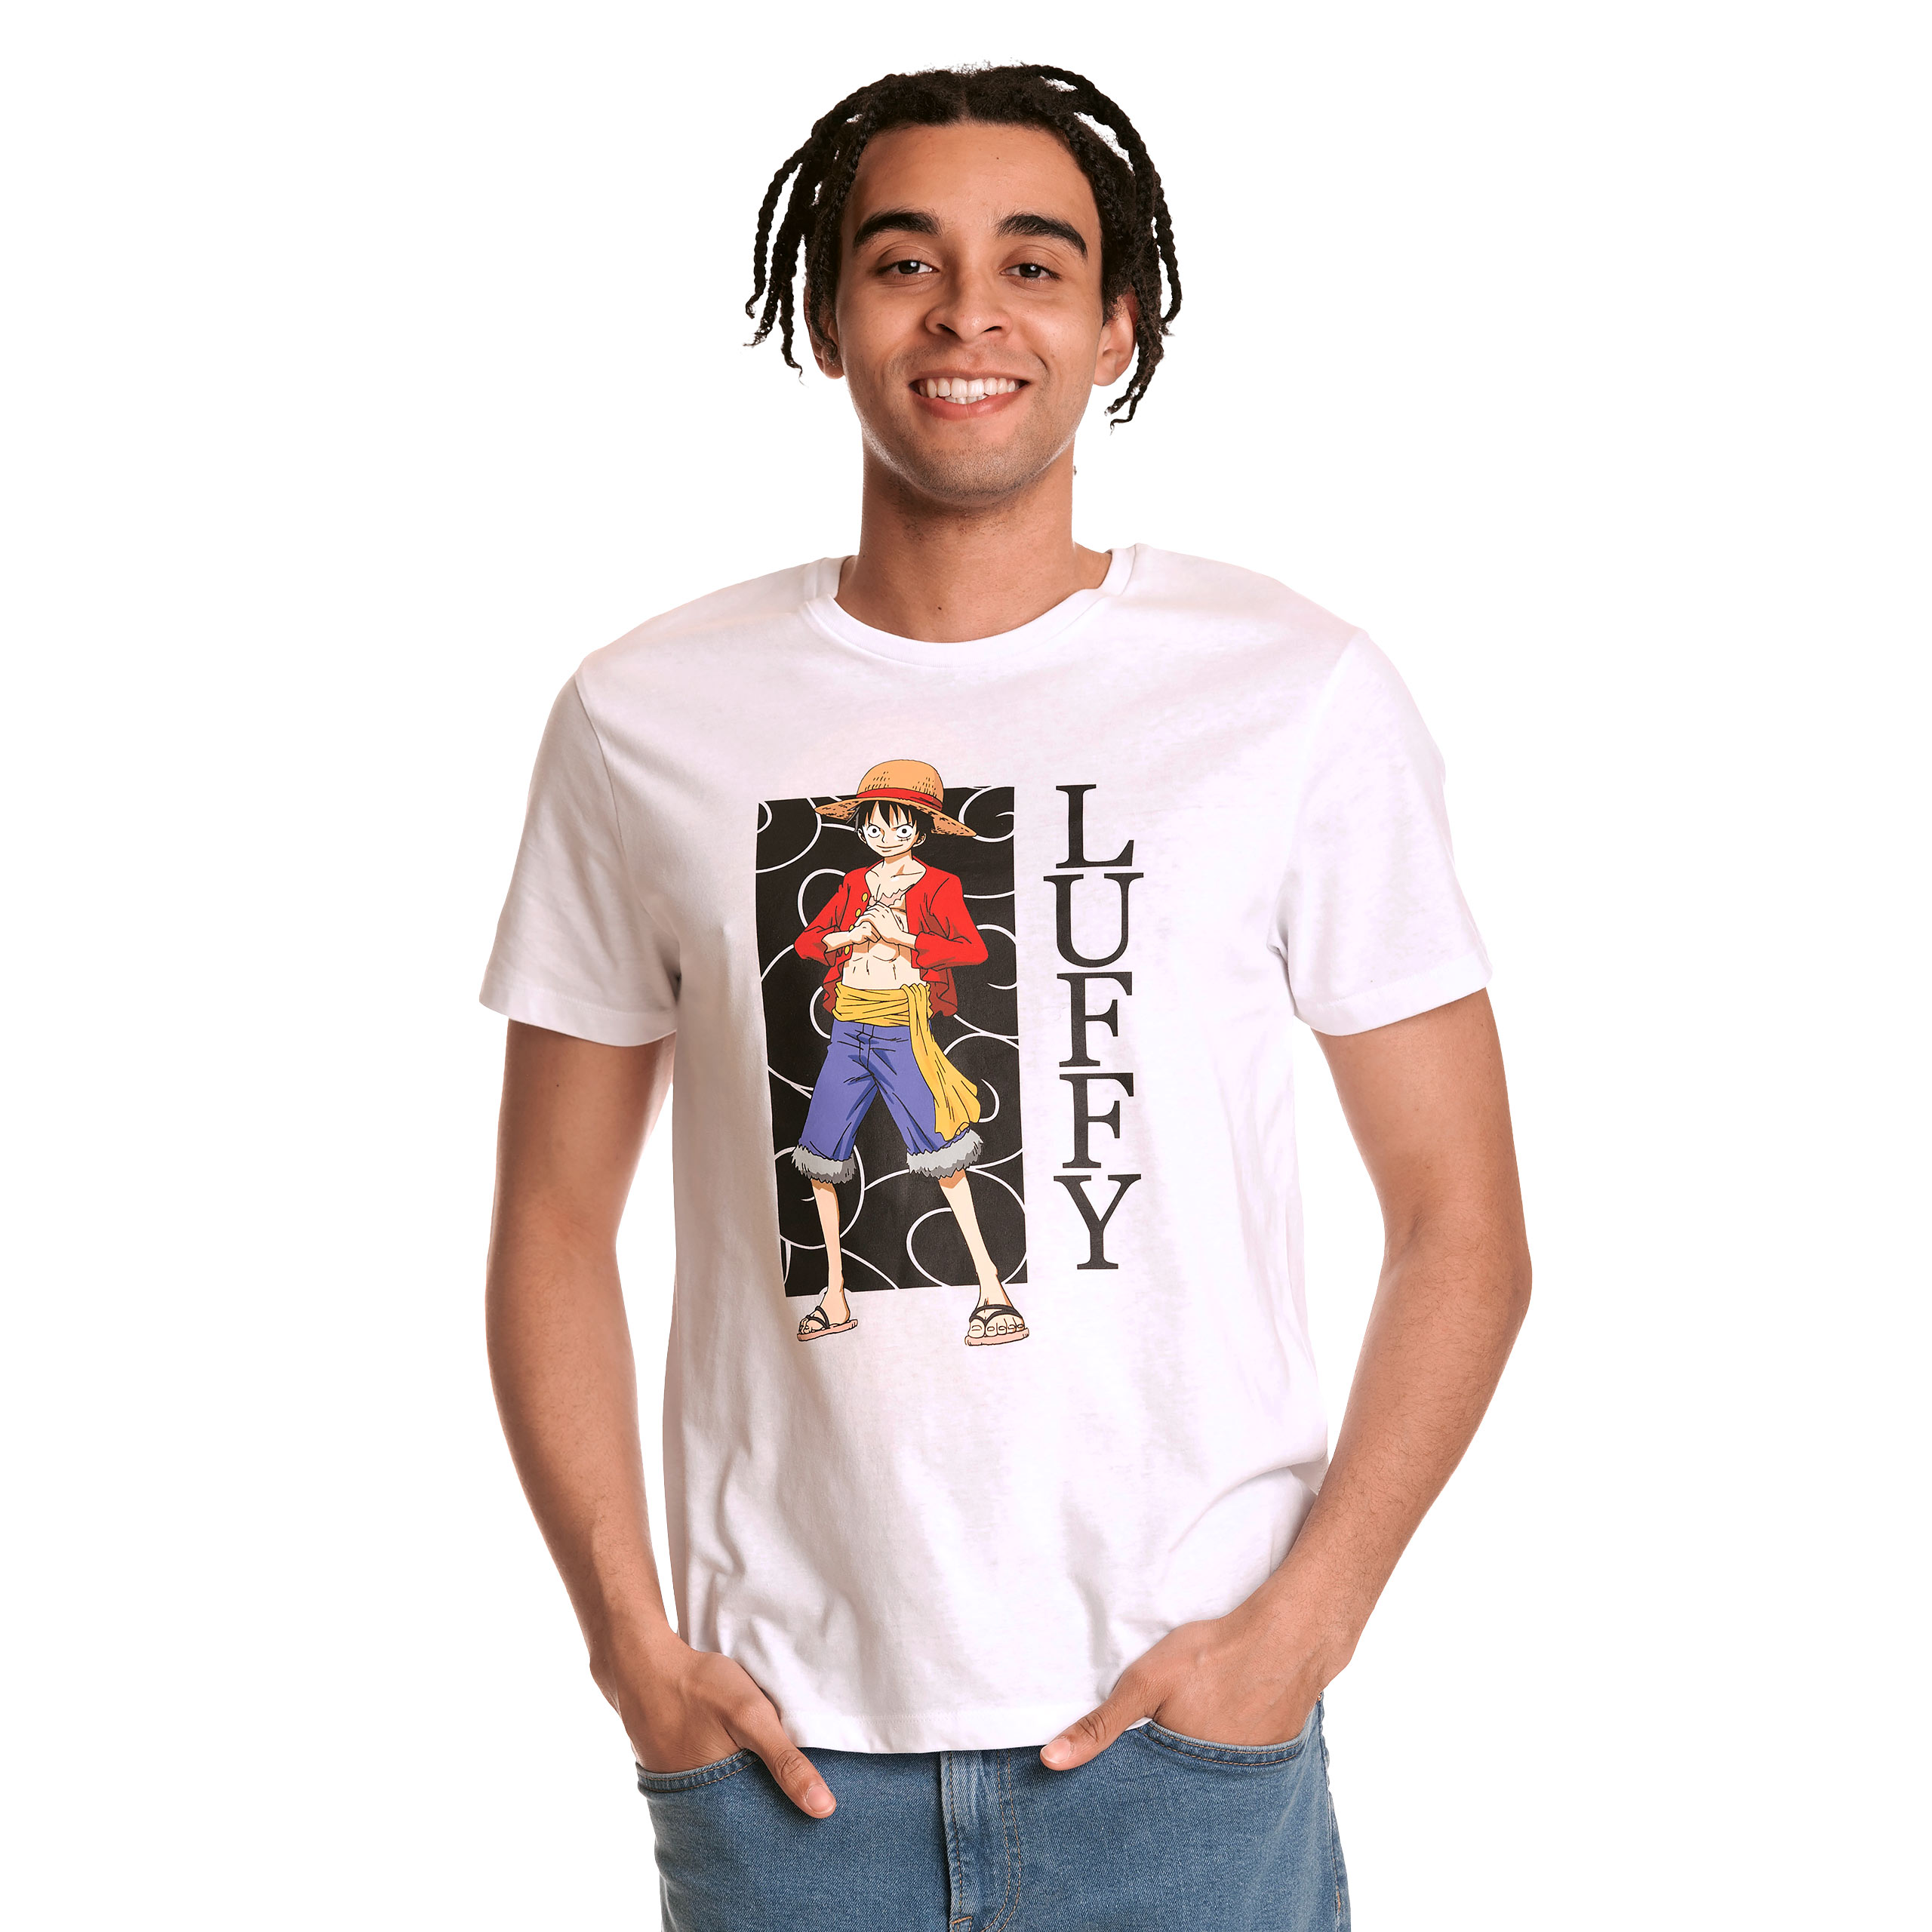 One Piece - Luffy T-Shirt weiß